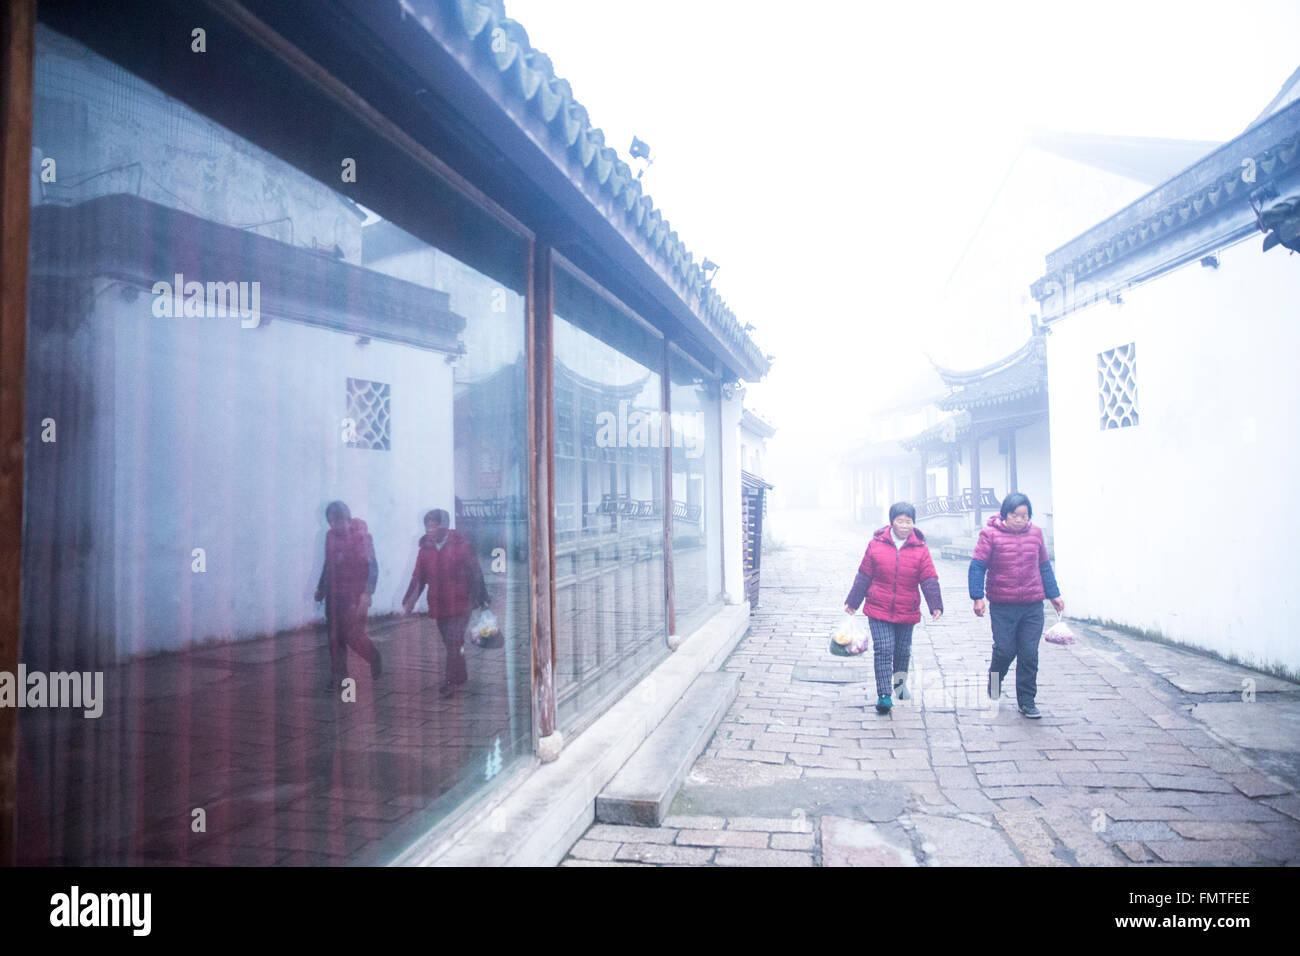 Come il cinese opaco pittura ad acquerello, pesante velatura rende il villaggio in sogno un sogno bianco. Foto Stock